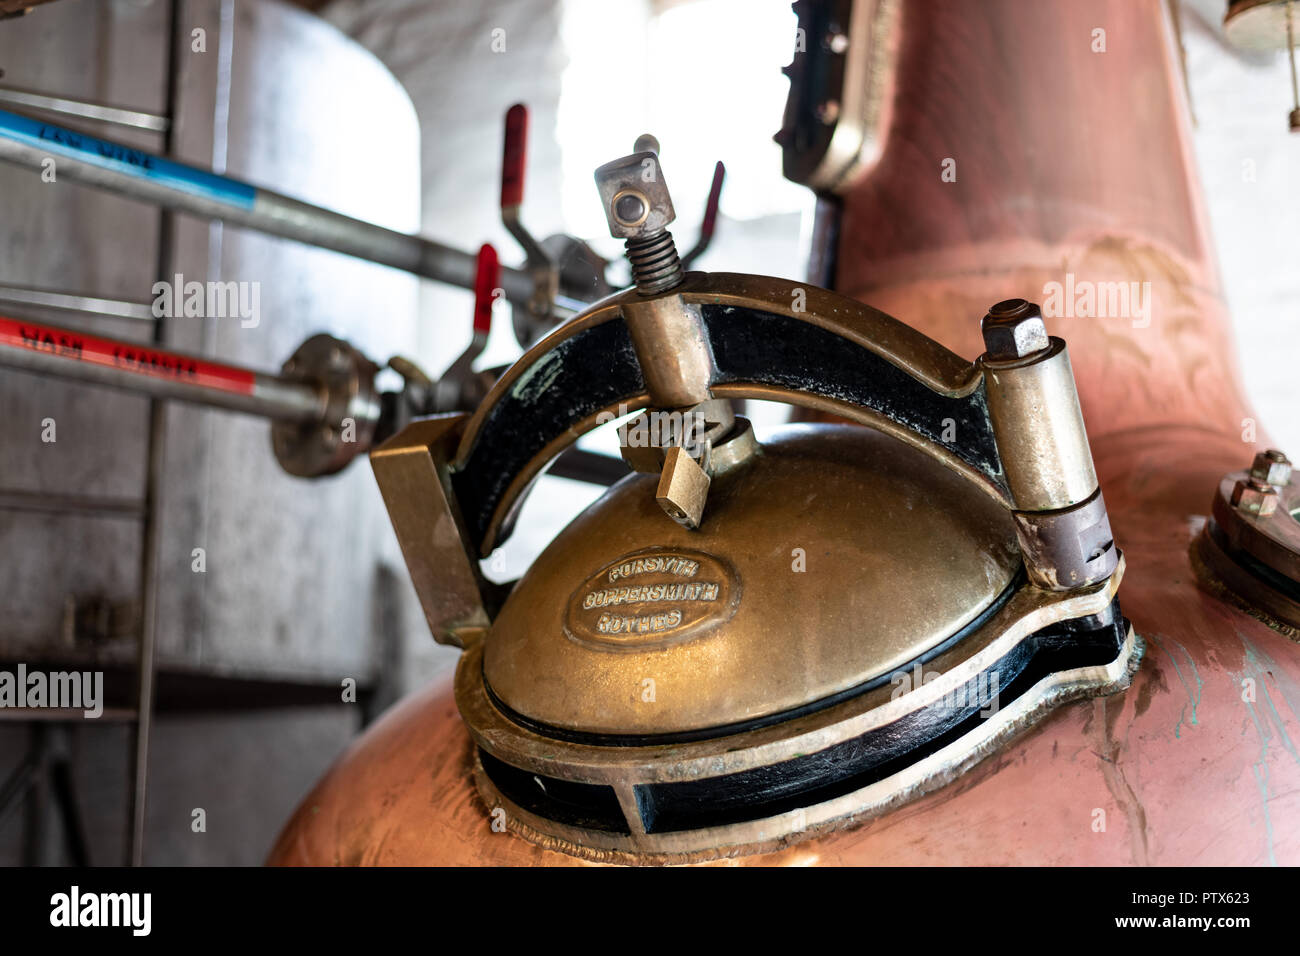 Il sidro tradizionale distilleria al sidro Healeys Farm, Cornwall Regno Unito. Foto Stock